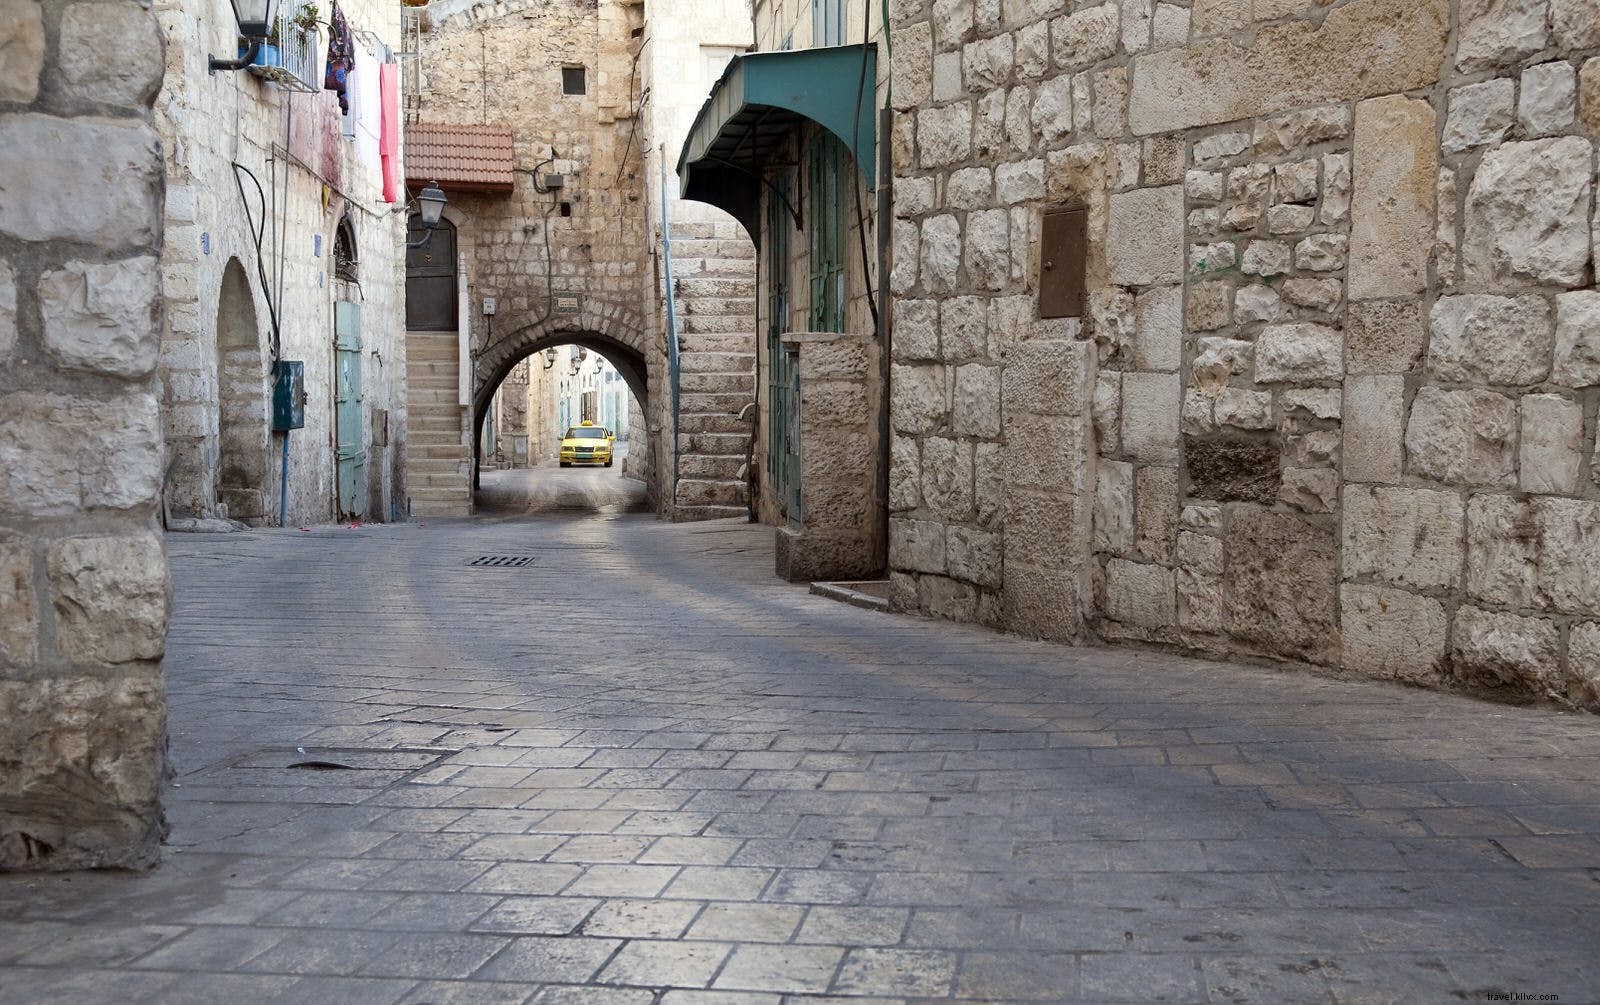 Melhores viagens de um dia saindo de Jerusalém 